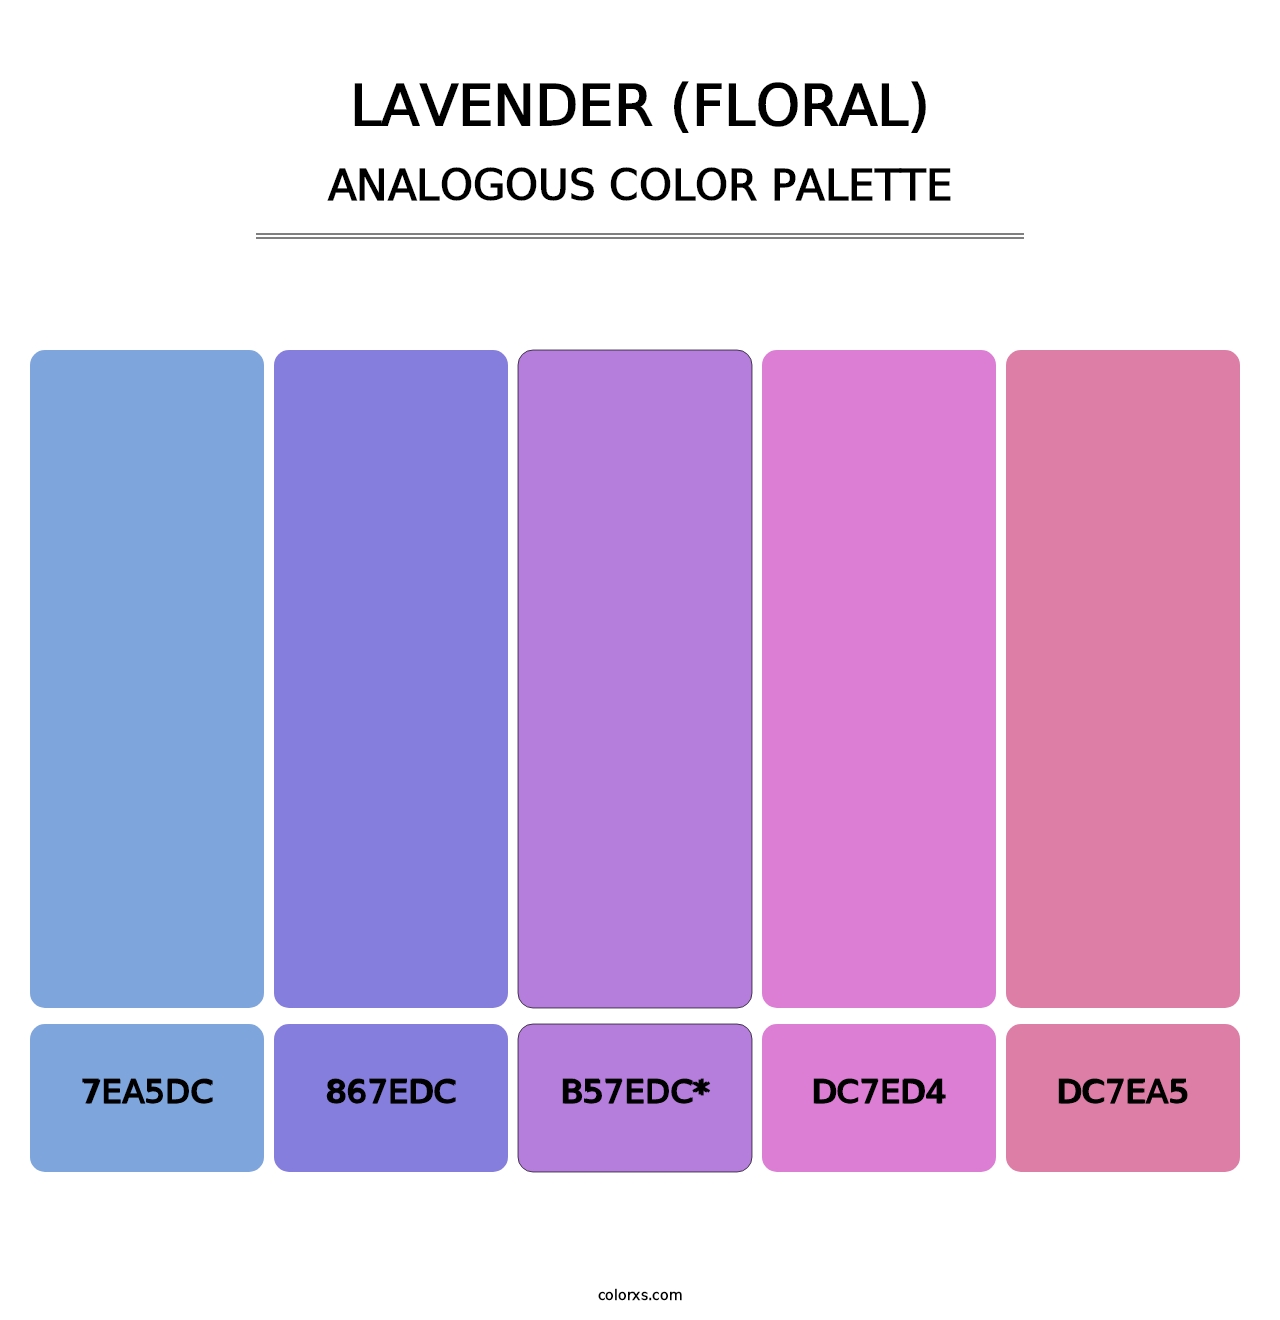 Lavender (Floral) - Analogous Color Palette